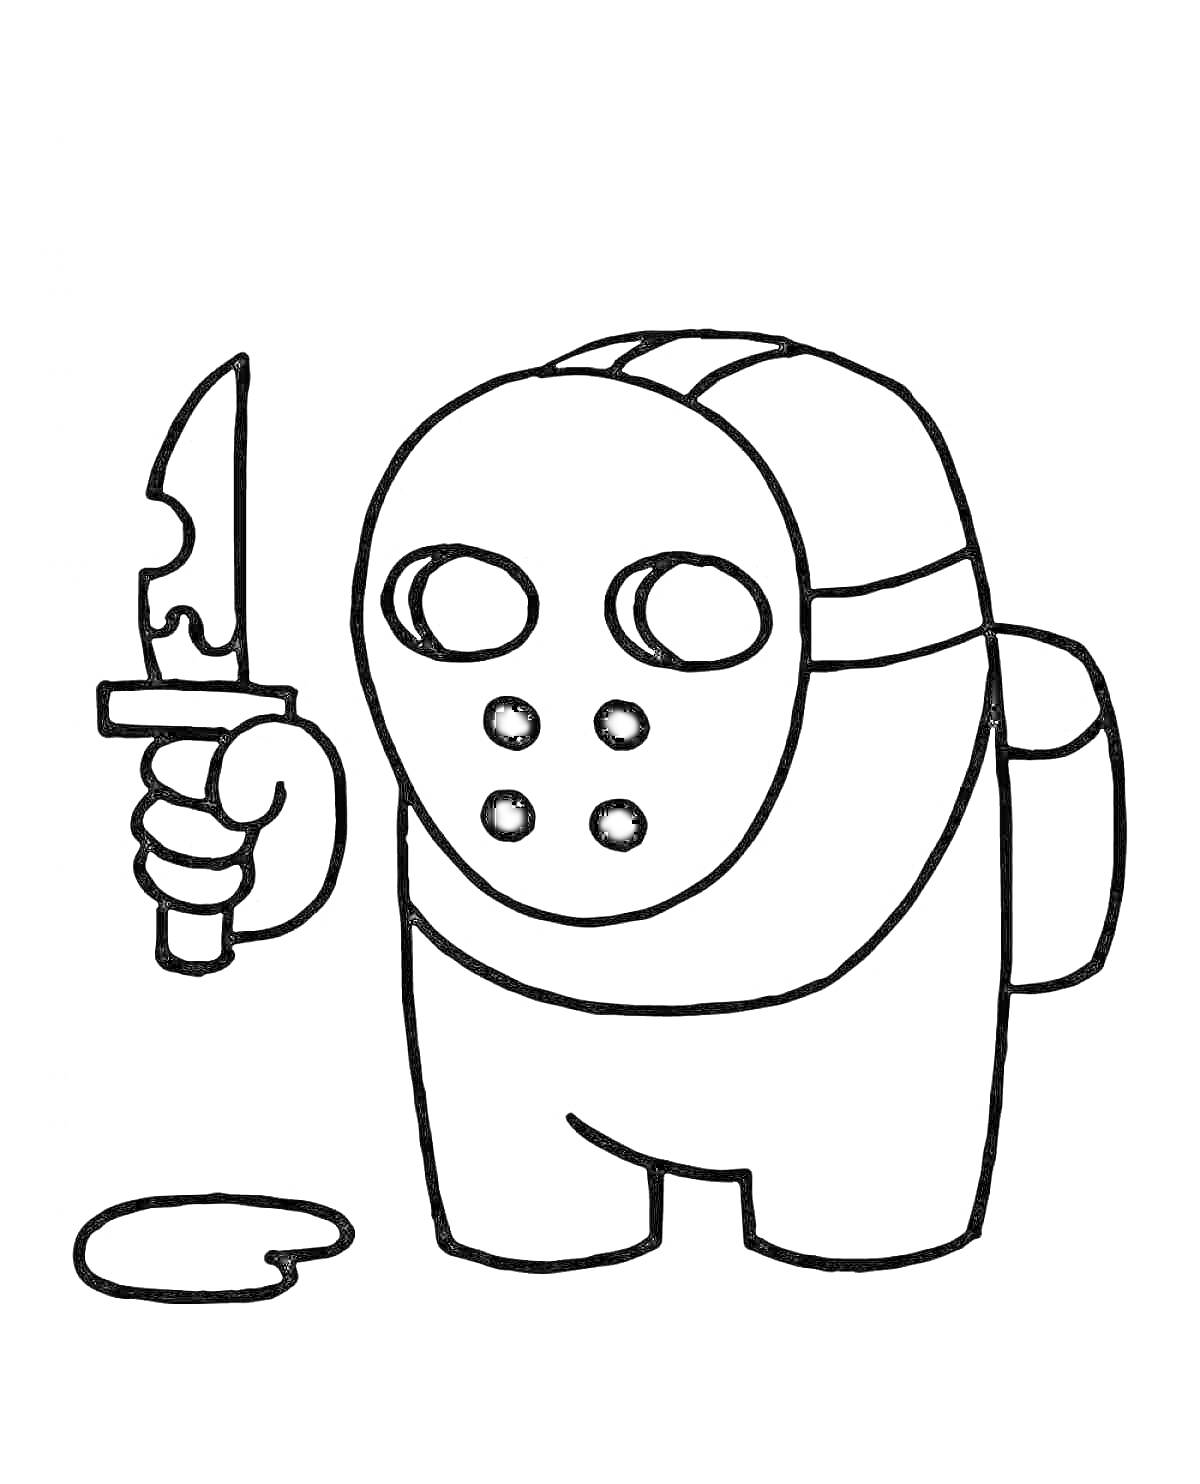 Раскраска Персонаж Among Us с маской и ножом